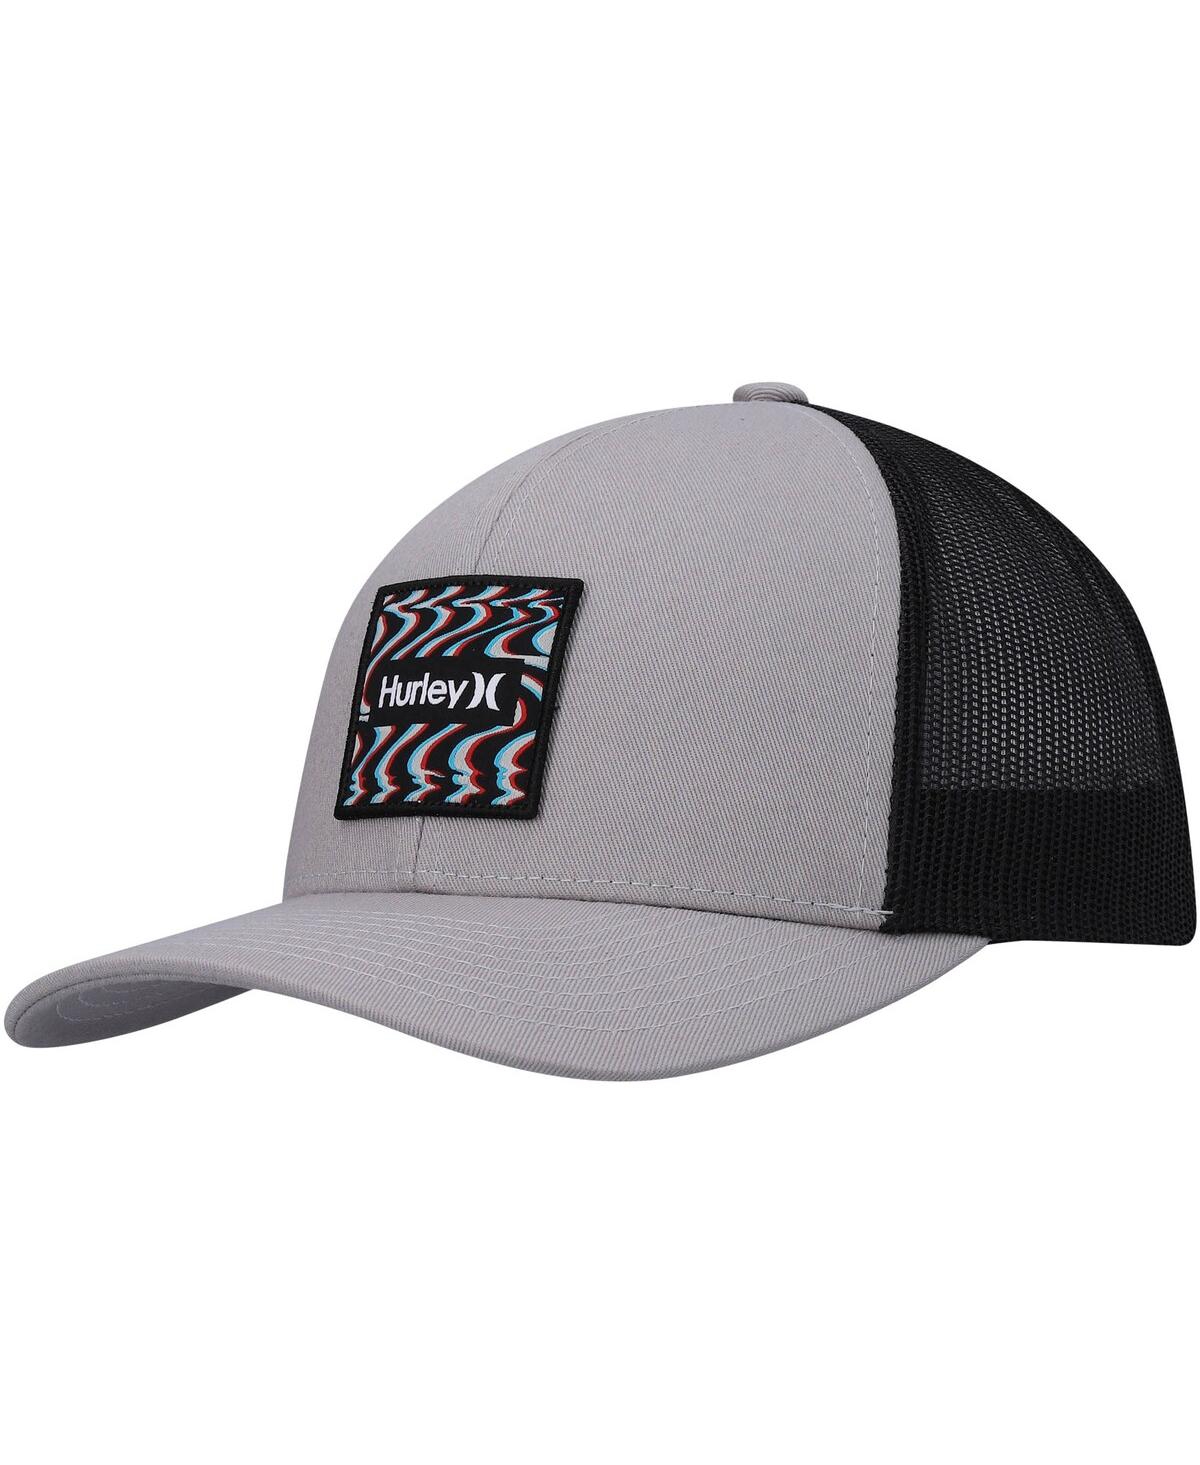 Men's Hurley Gray Seacliff Trucker Snapback Hat - Gray